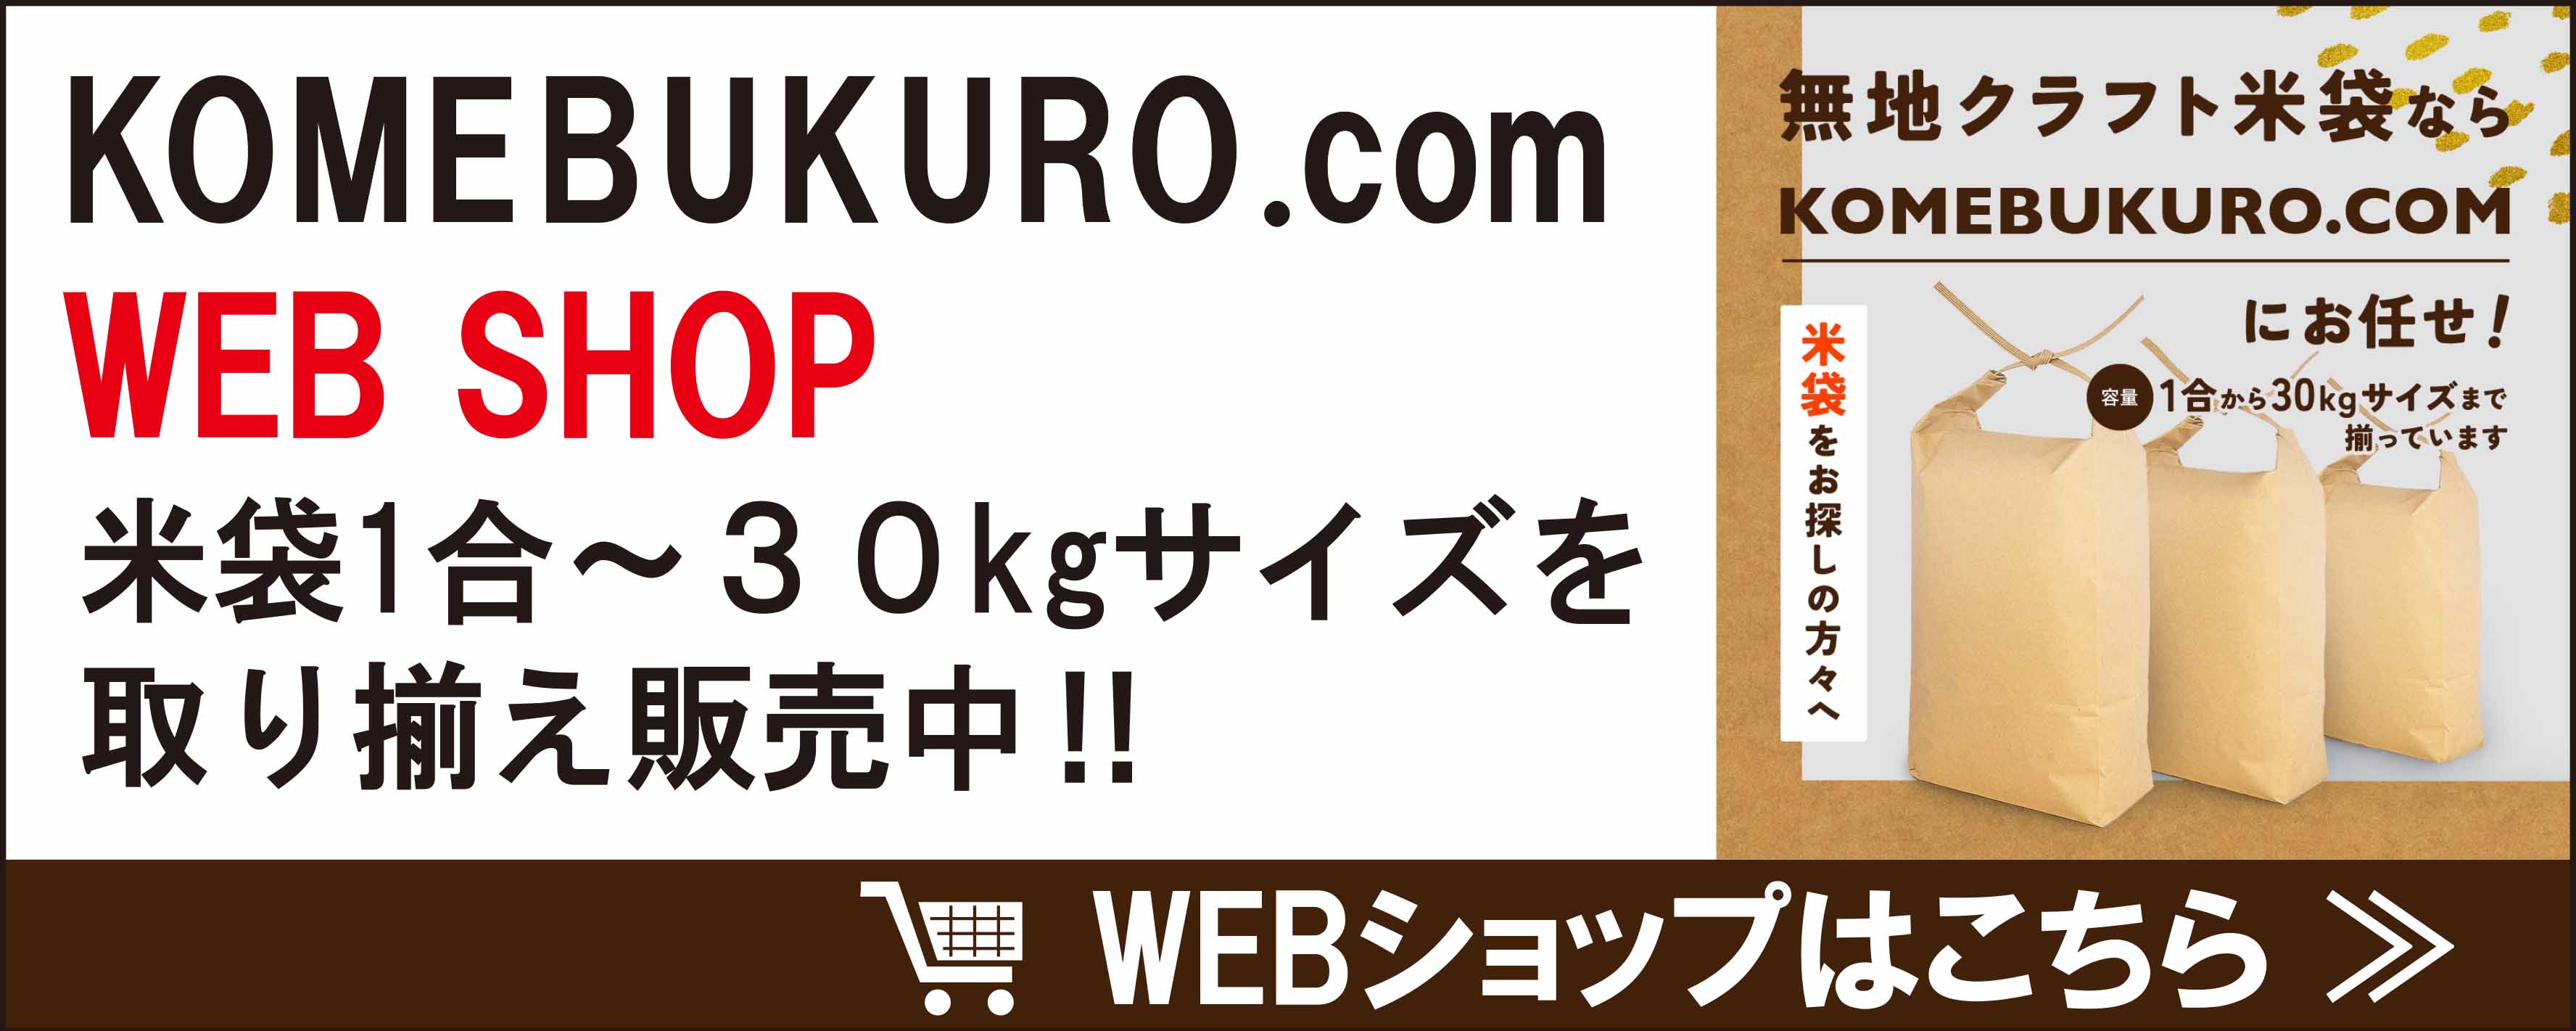 オリジナルの米袋制作ならKOMEBUKURO.COM WEB SHOP